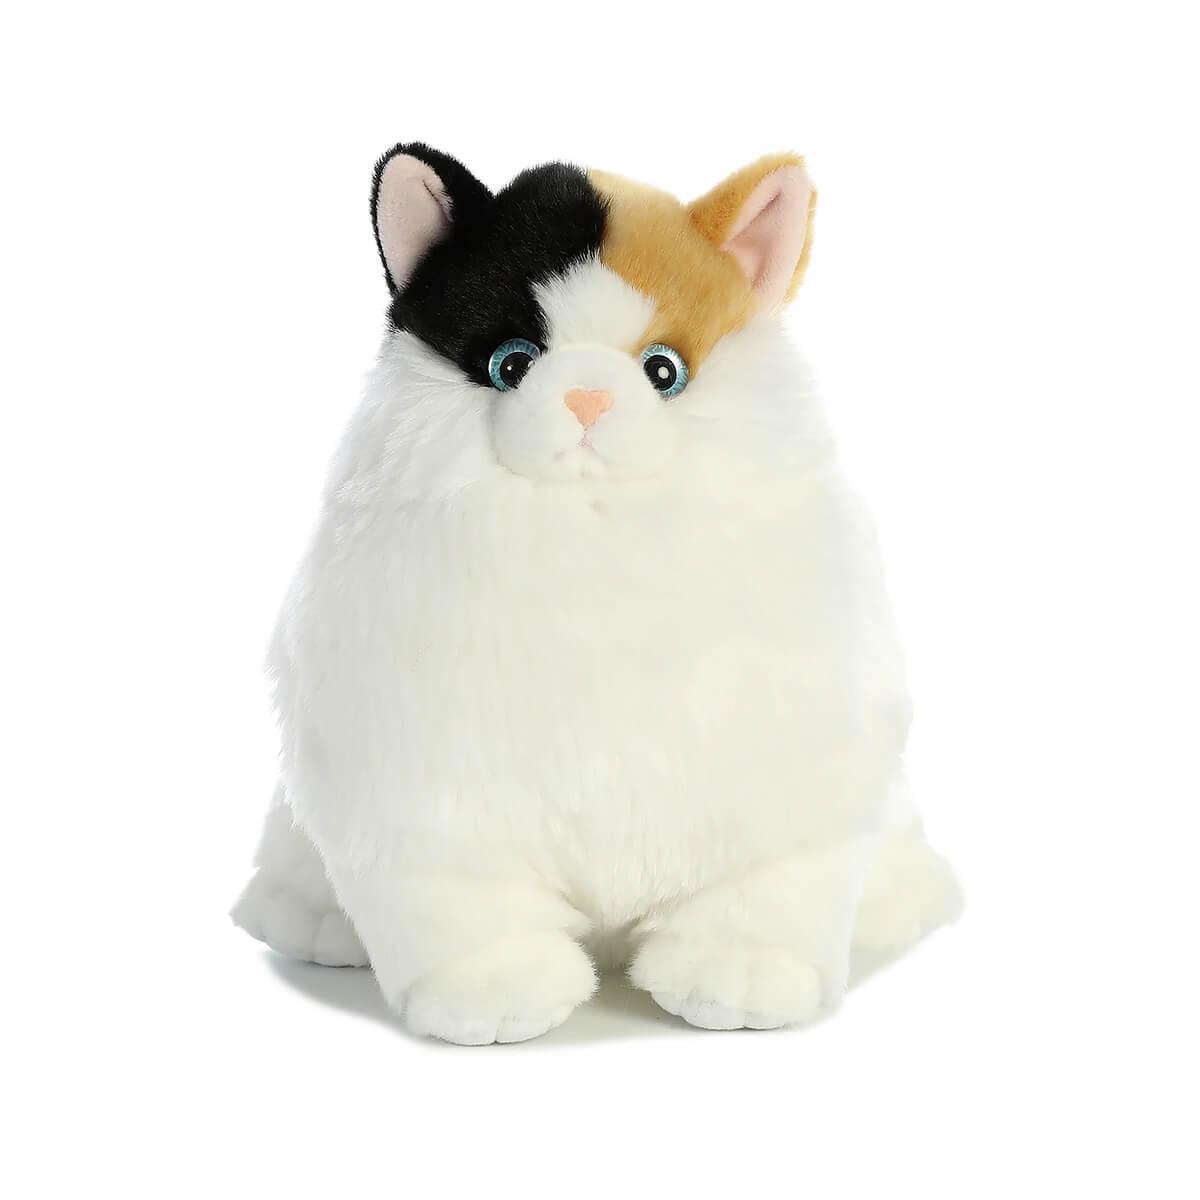  Calico Cat Plush Toy